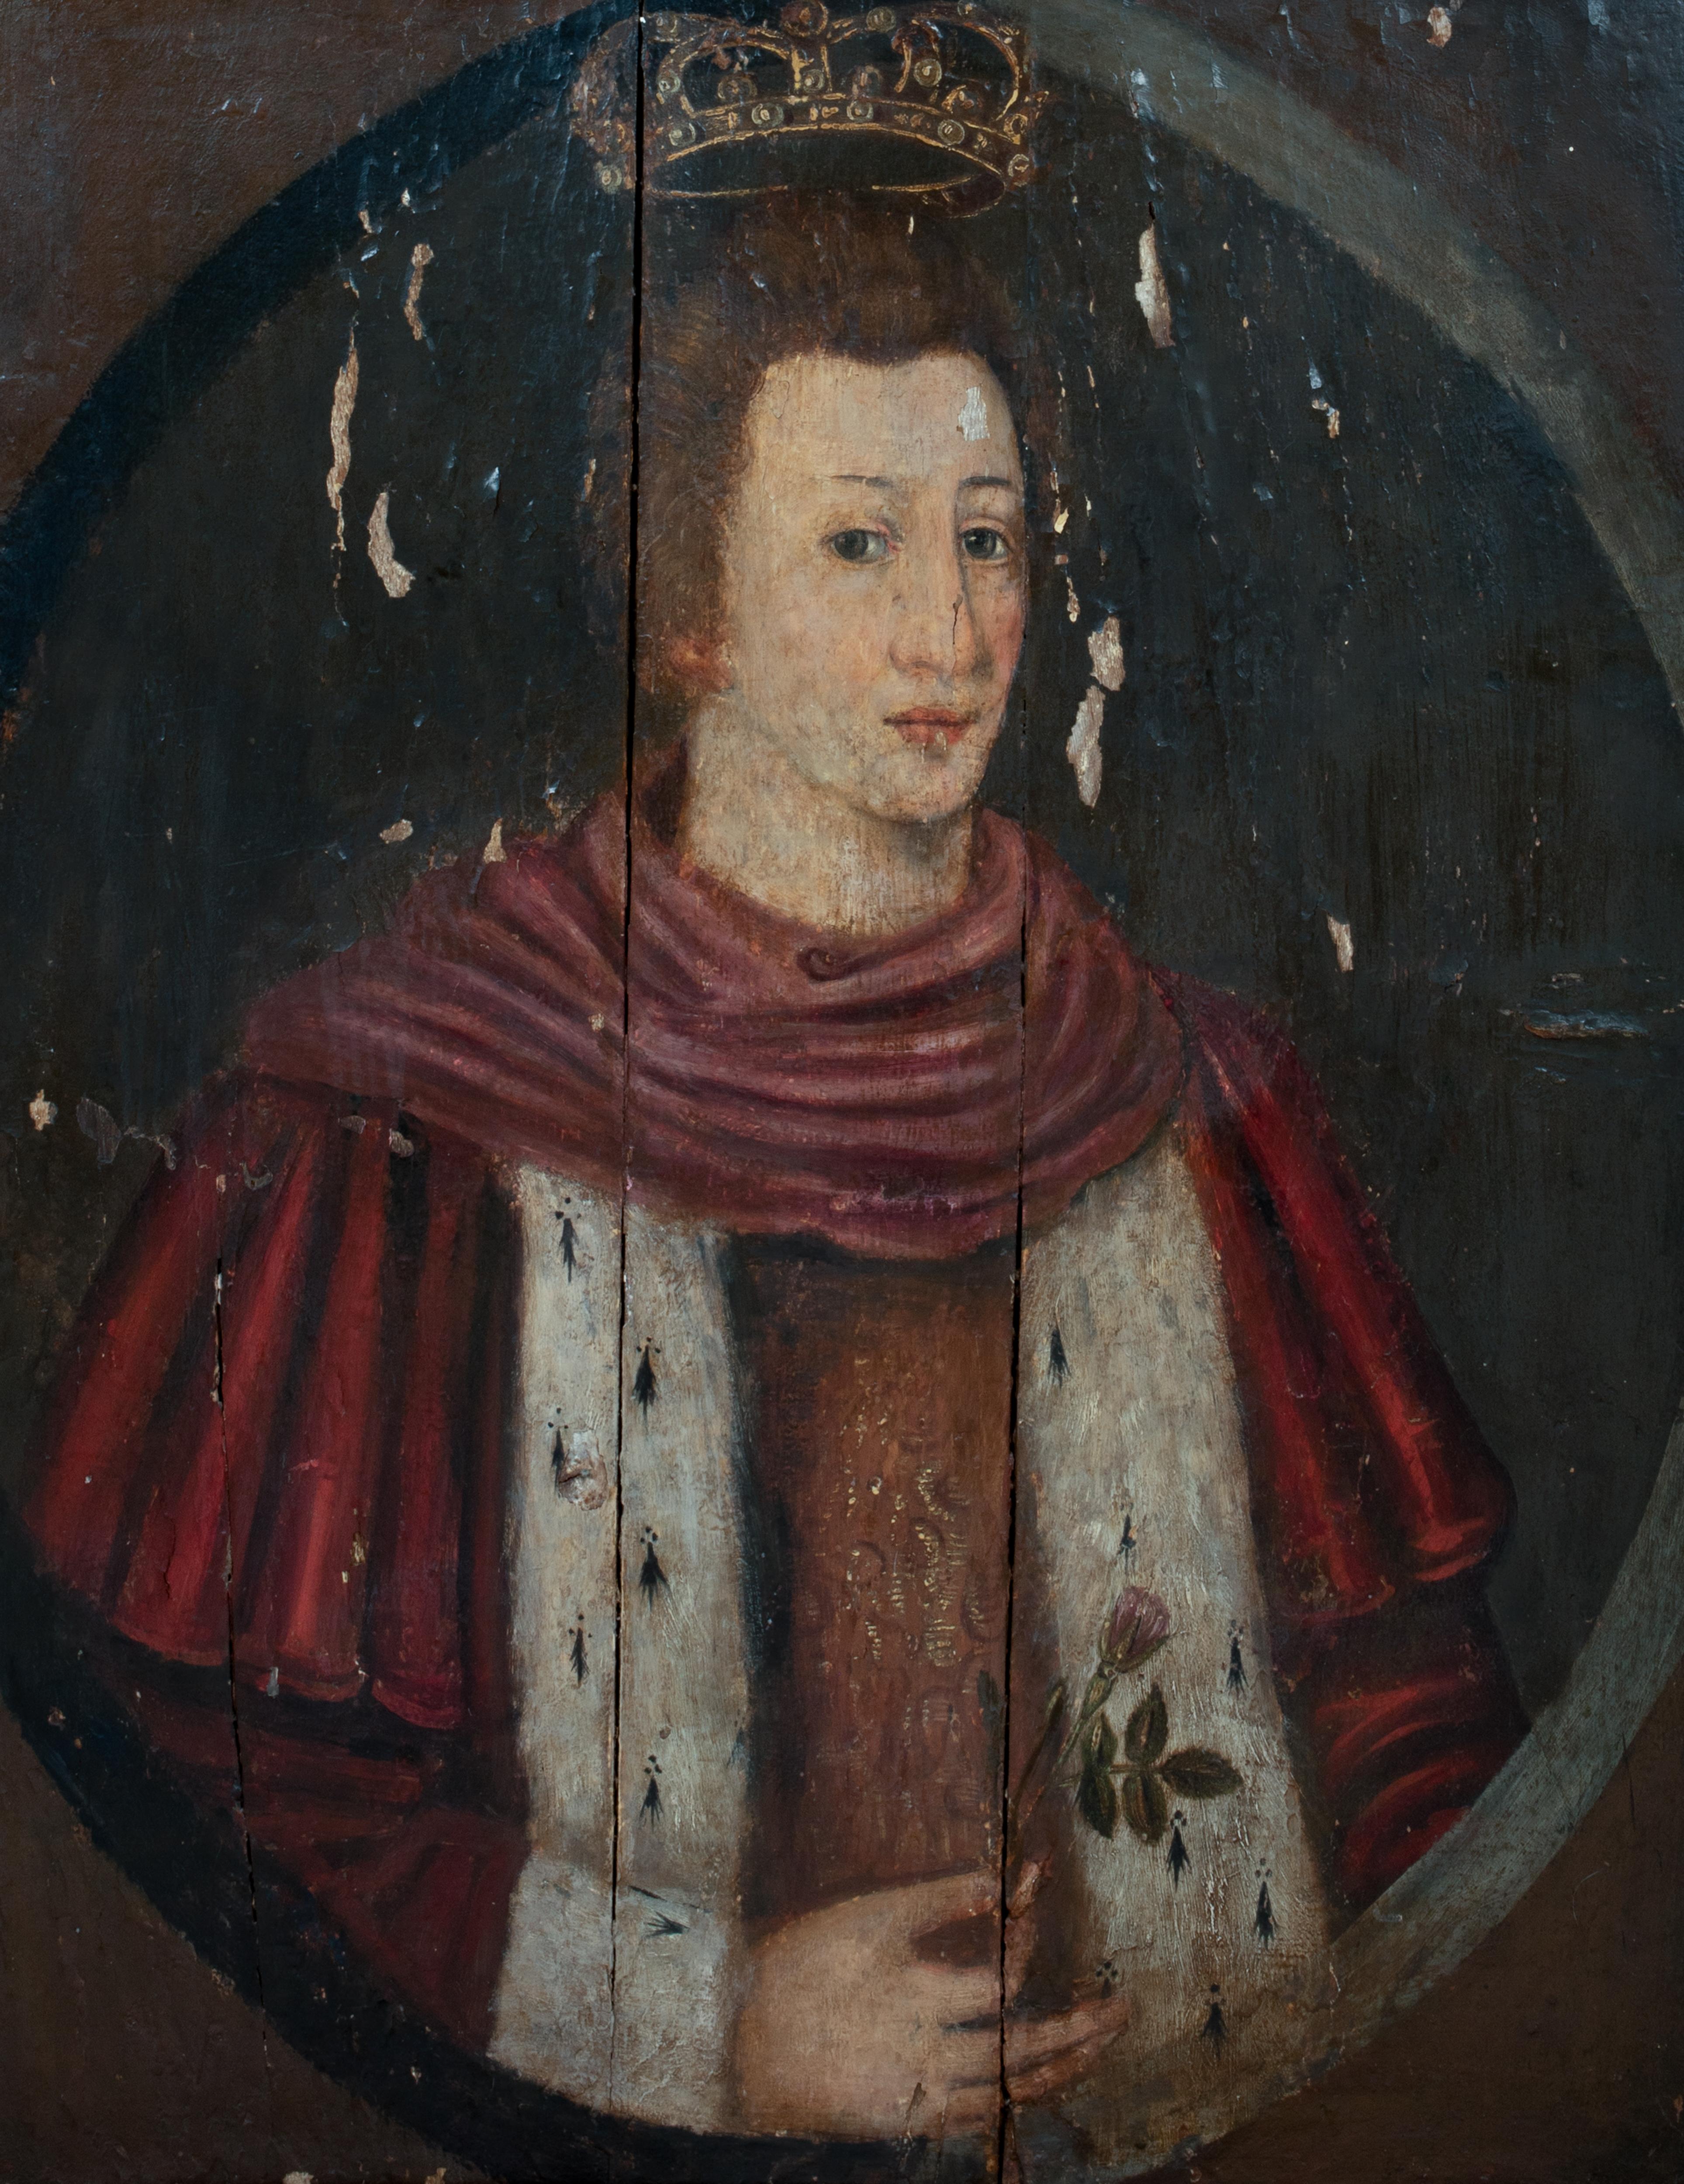 Porträt von König Edward VI (1537-1553) als Prinz von Wales, 16. Jahrhundert 

Englische Schule - Öl auf Tafel - um 1547

Großes Porträt von Edward VI. als Prinz von Wales aus dem 16. Jahrhundert, Öl auf Tafel. Frühes und bedeutendes Porträt des